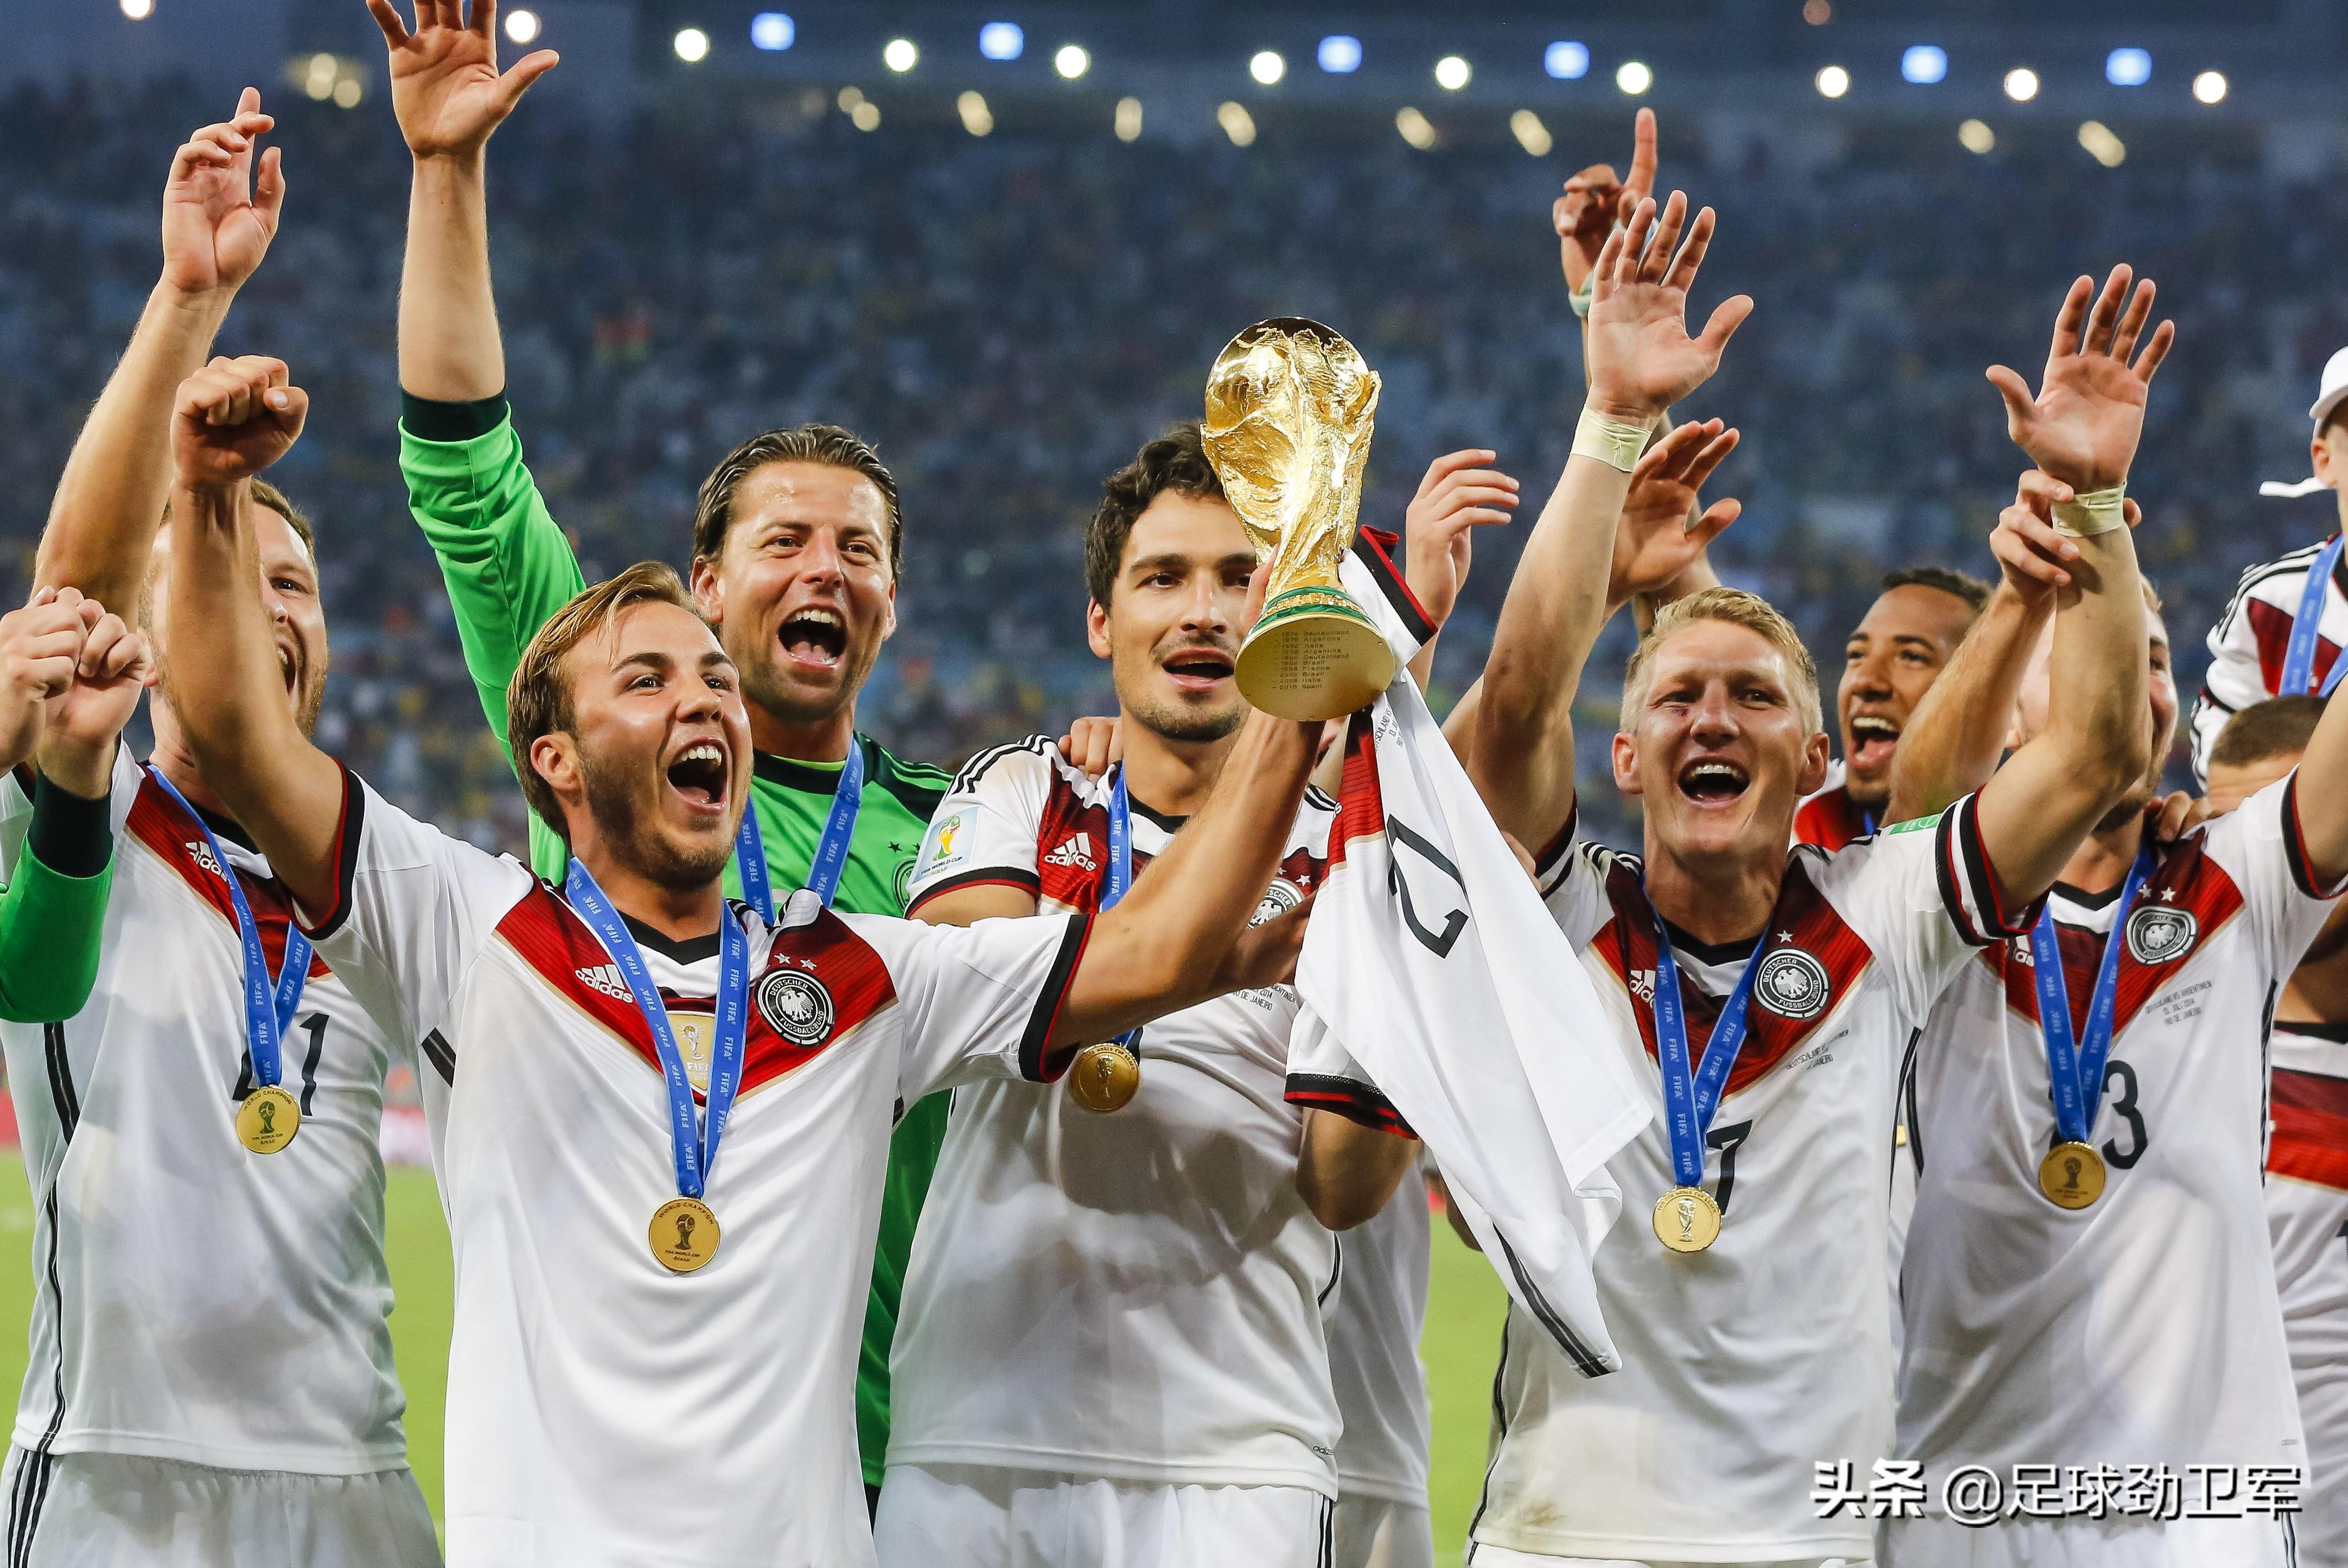 希特勒欧冠足球 夺过6次世界冠军的德国足球有不愿意示人的一面吗(1)